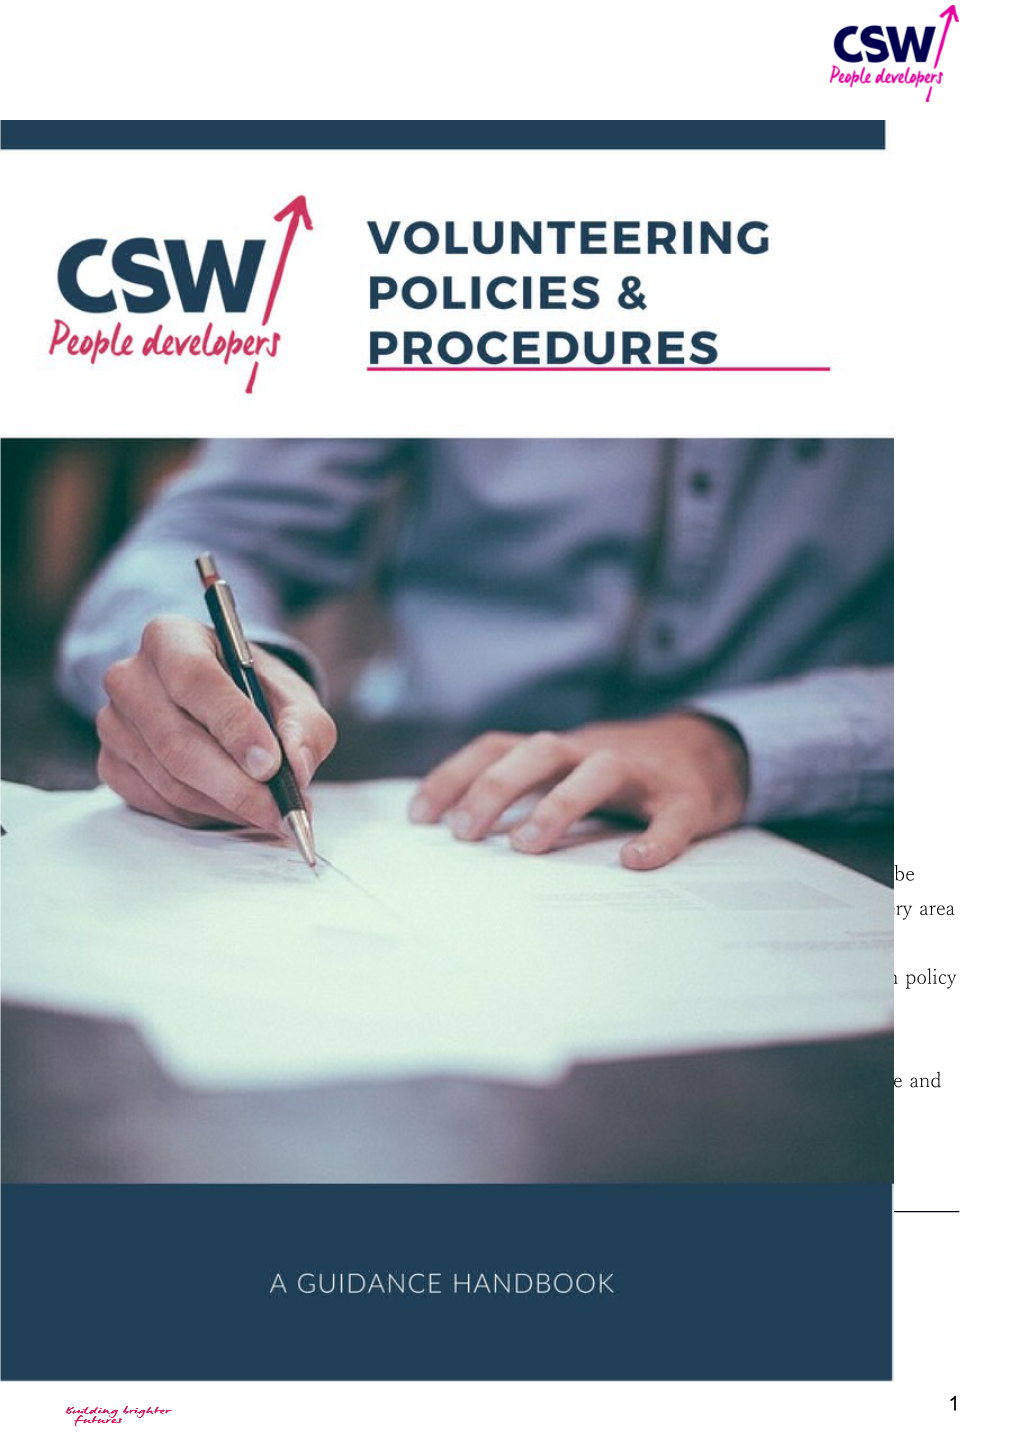 Welcome to the Volunteering Policies and Procedures Handbook